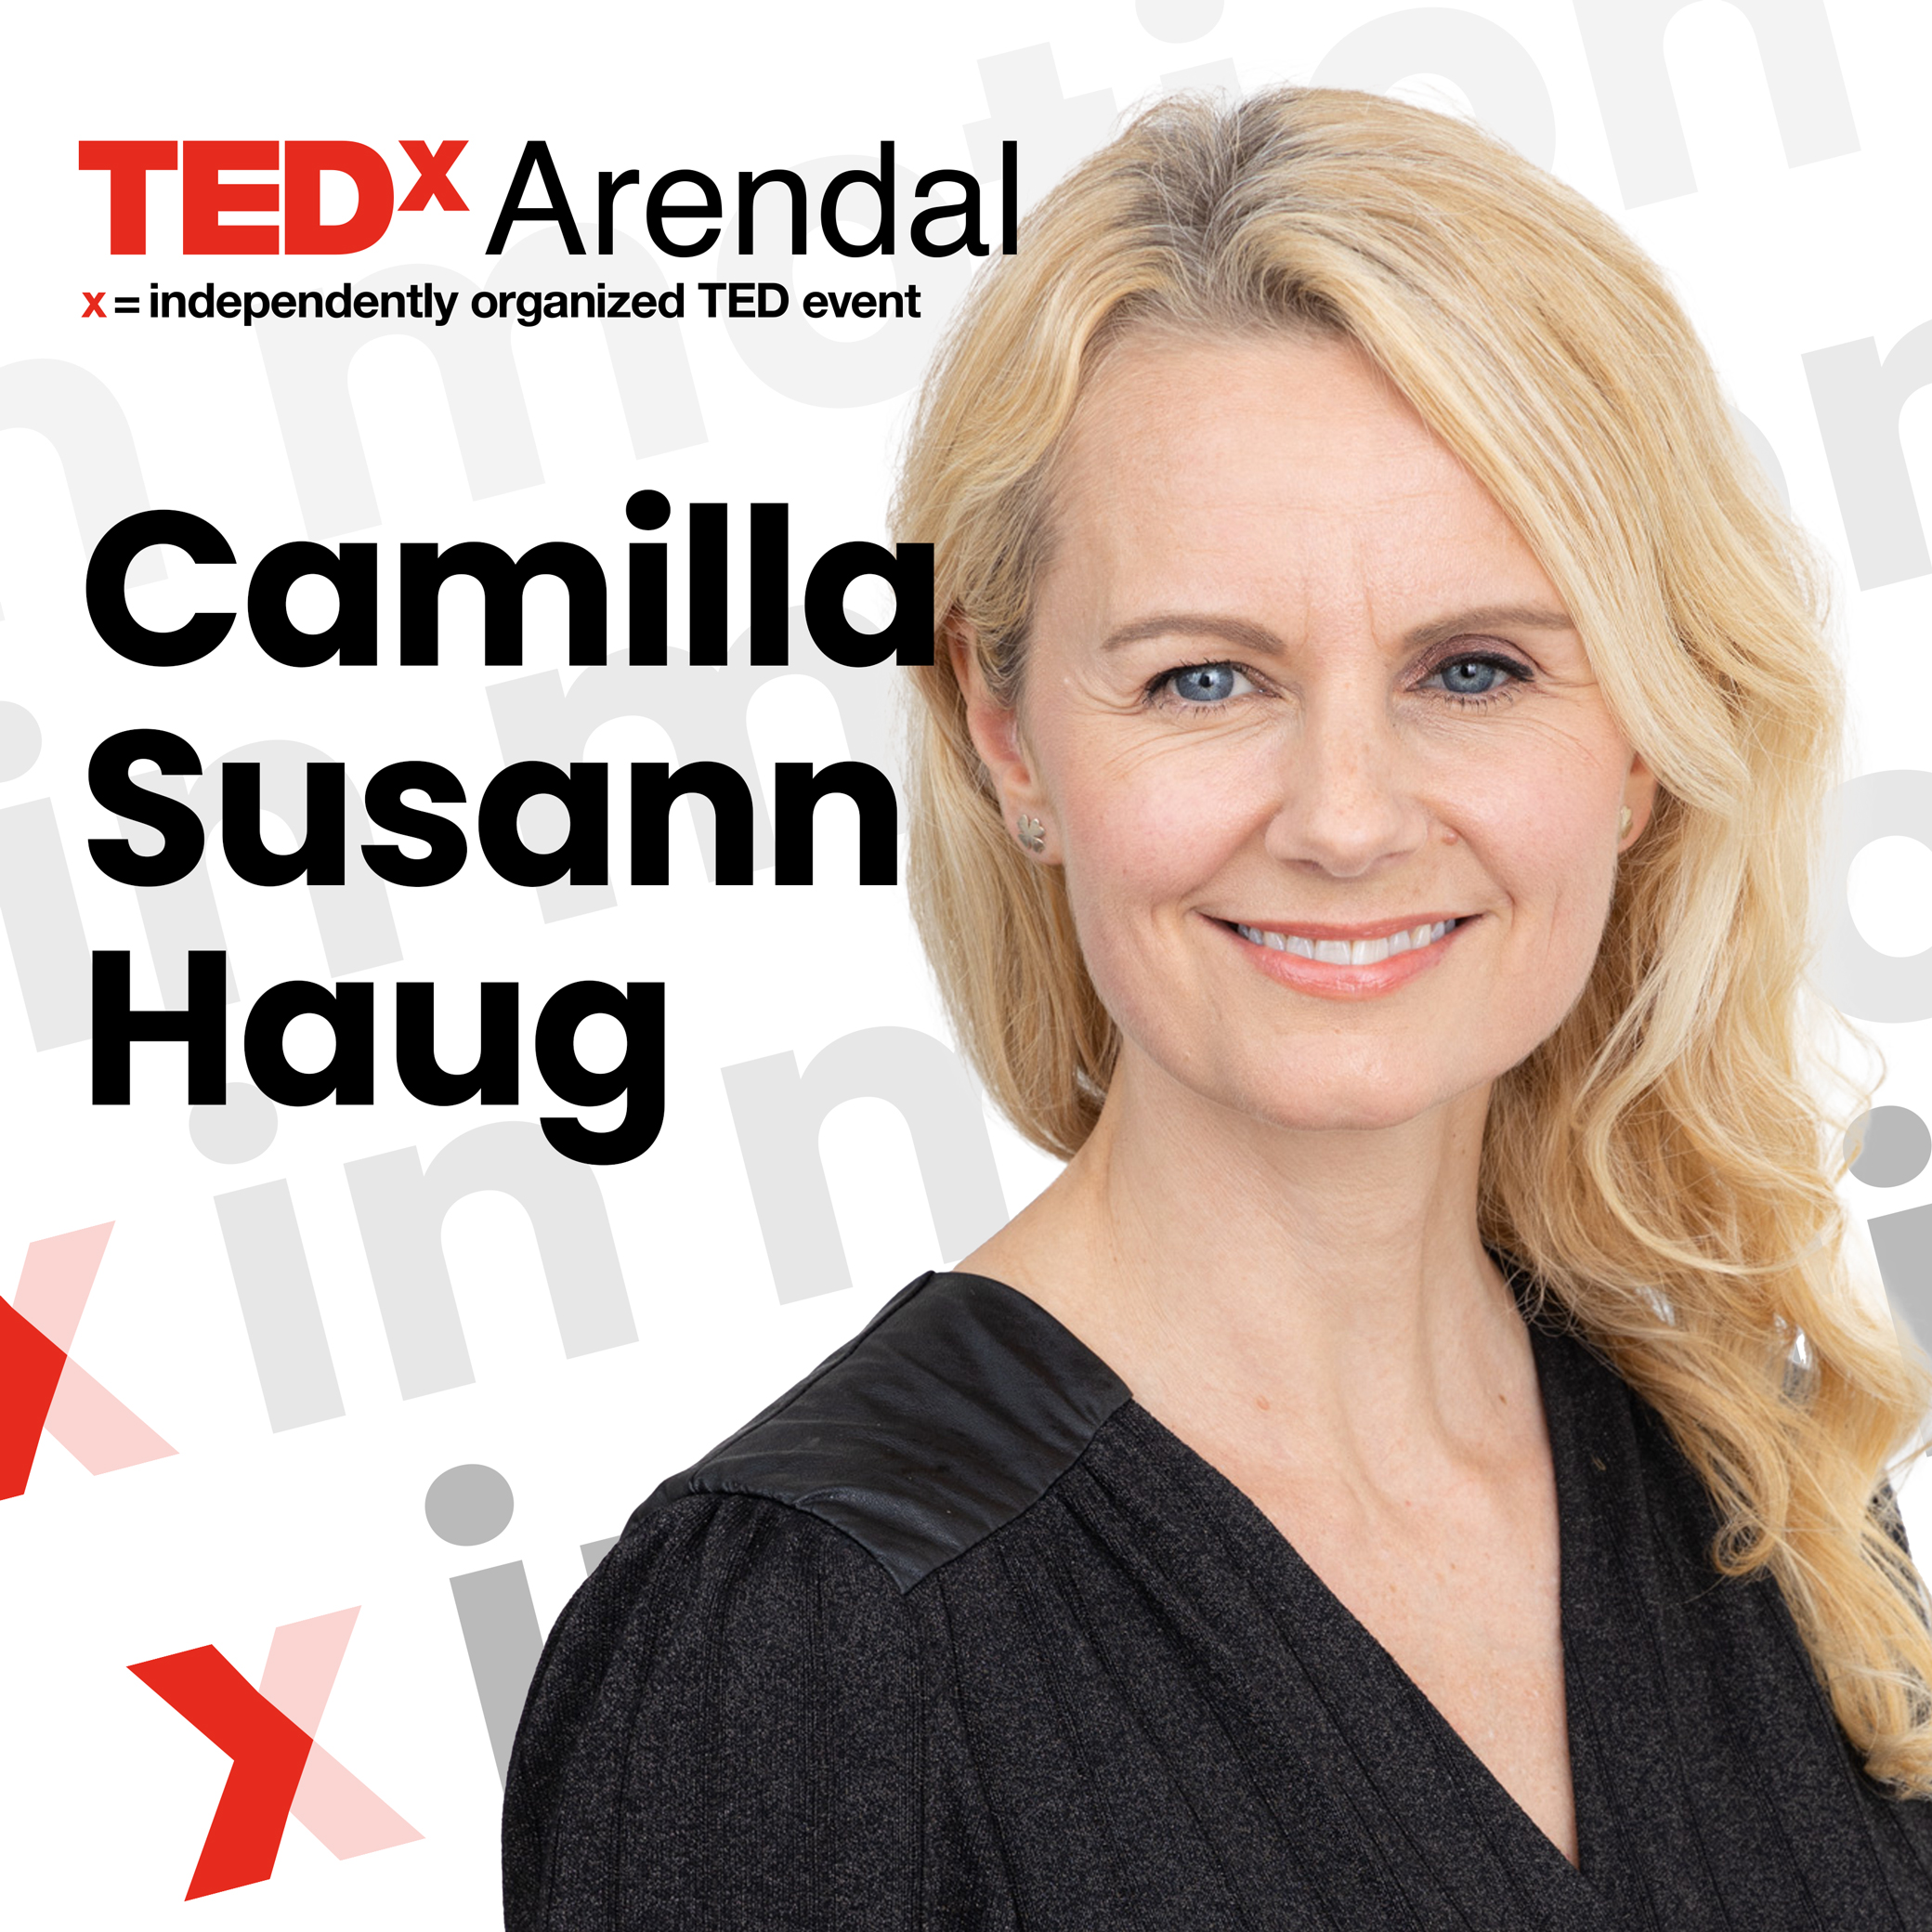 Camilla Susann Haug